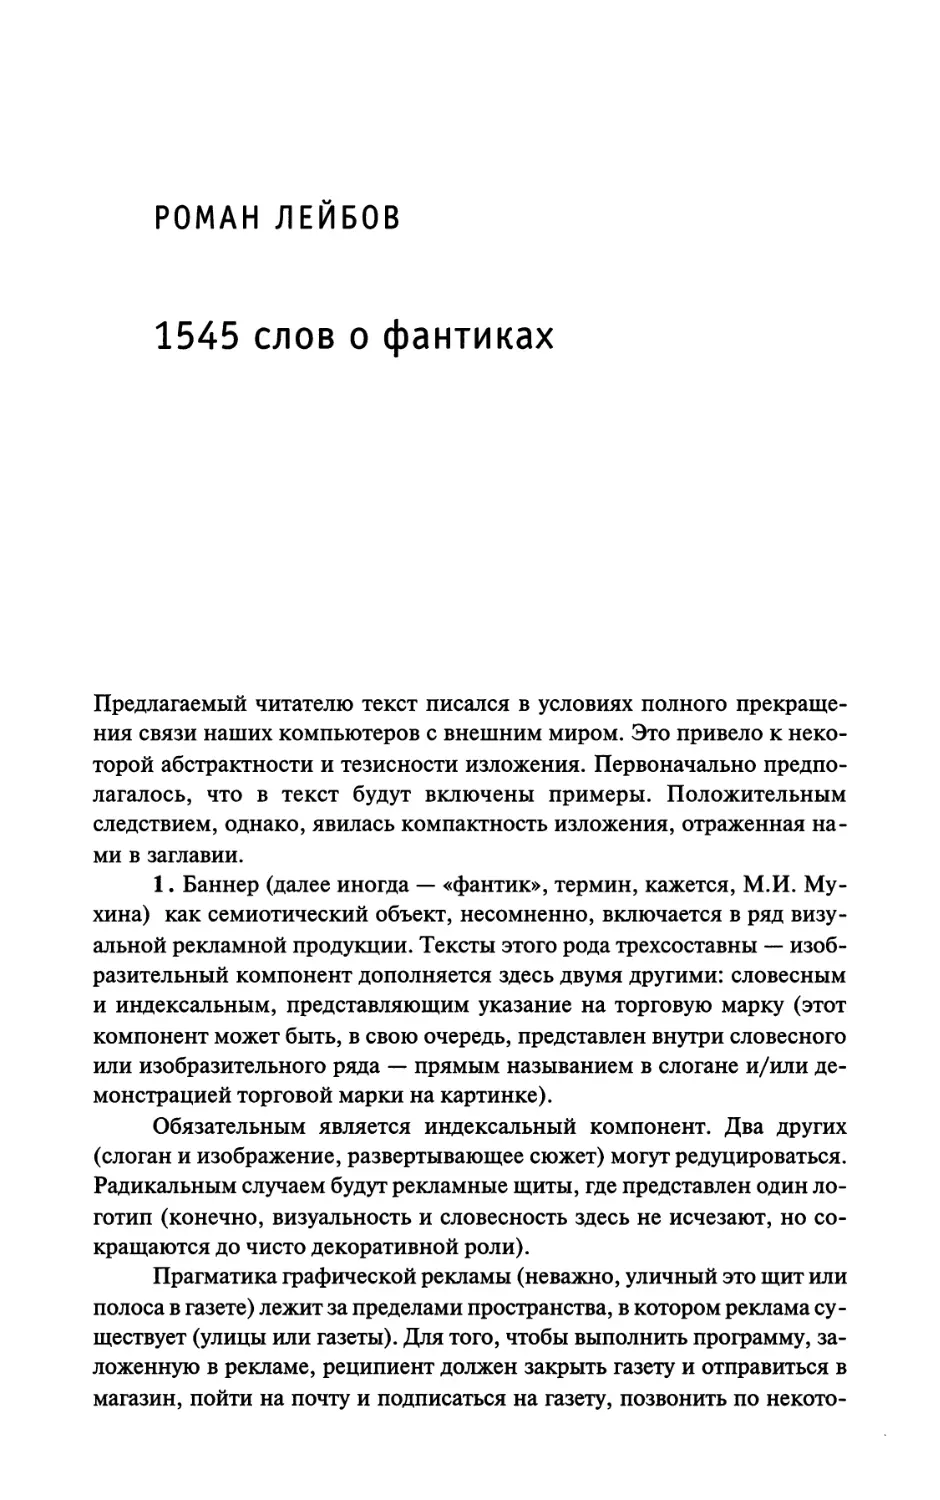 Роман Лейбов. 1545 слов о фантиках